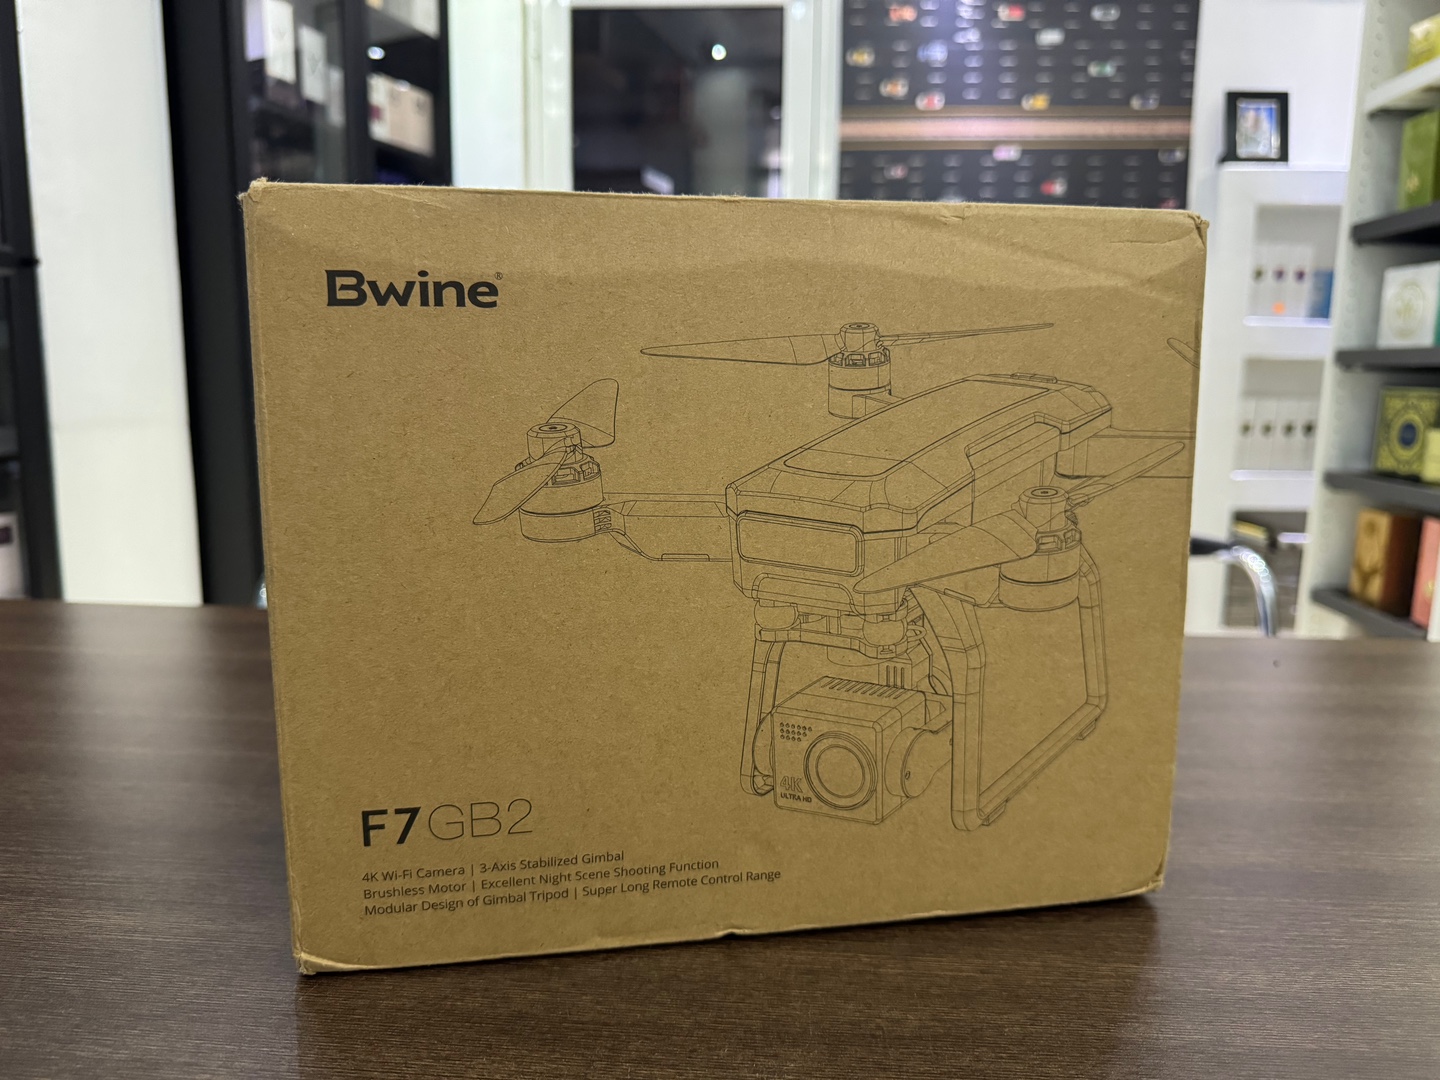 camaras y audio - Drone Bwine F7GB2 Nuevo Sellado Completo + EXTRAS!!, 0